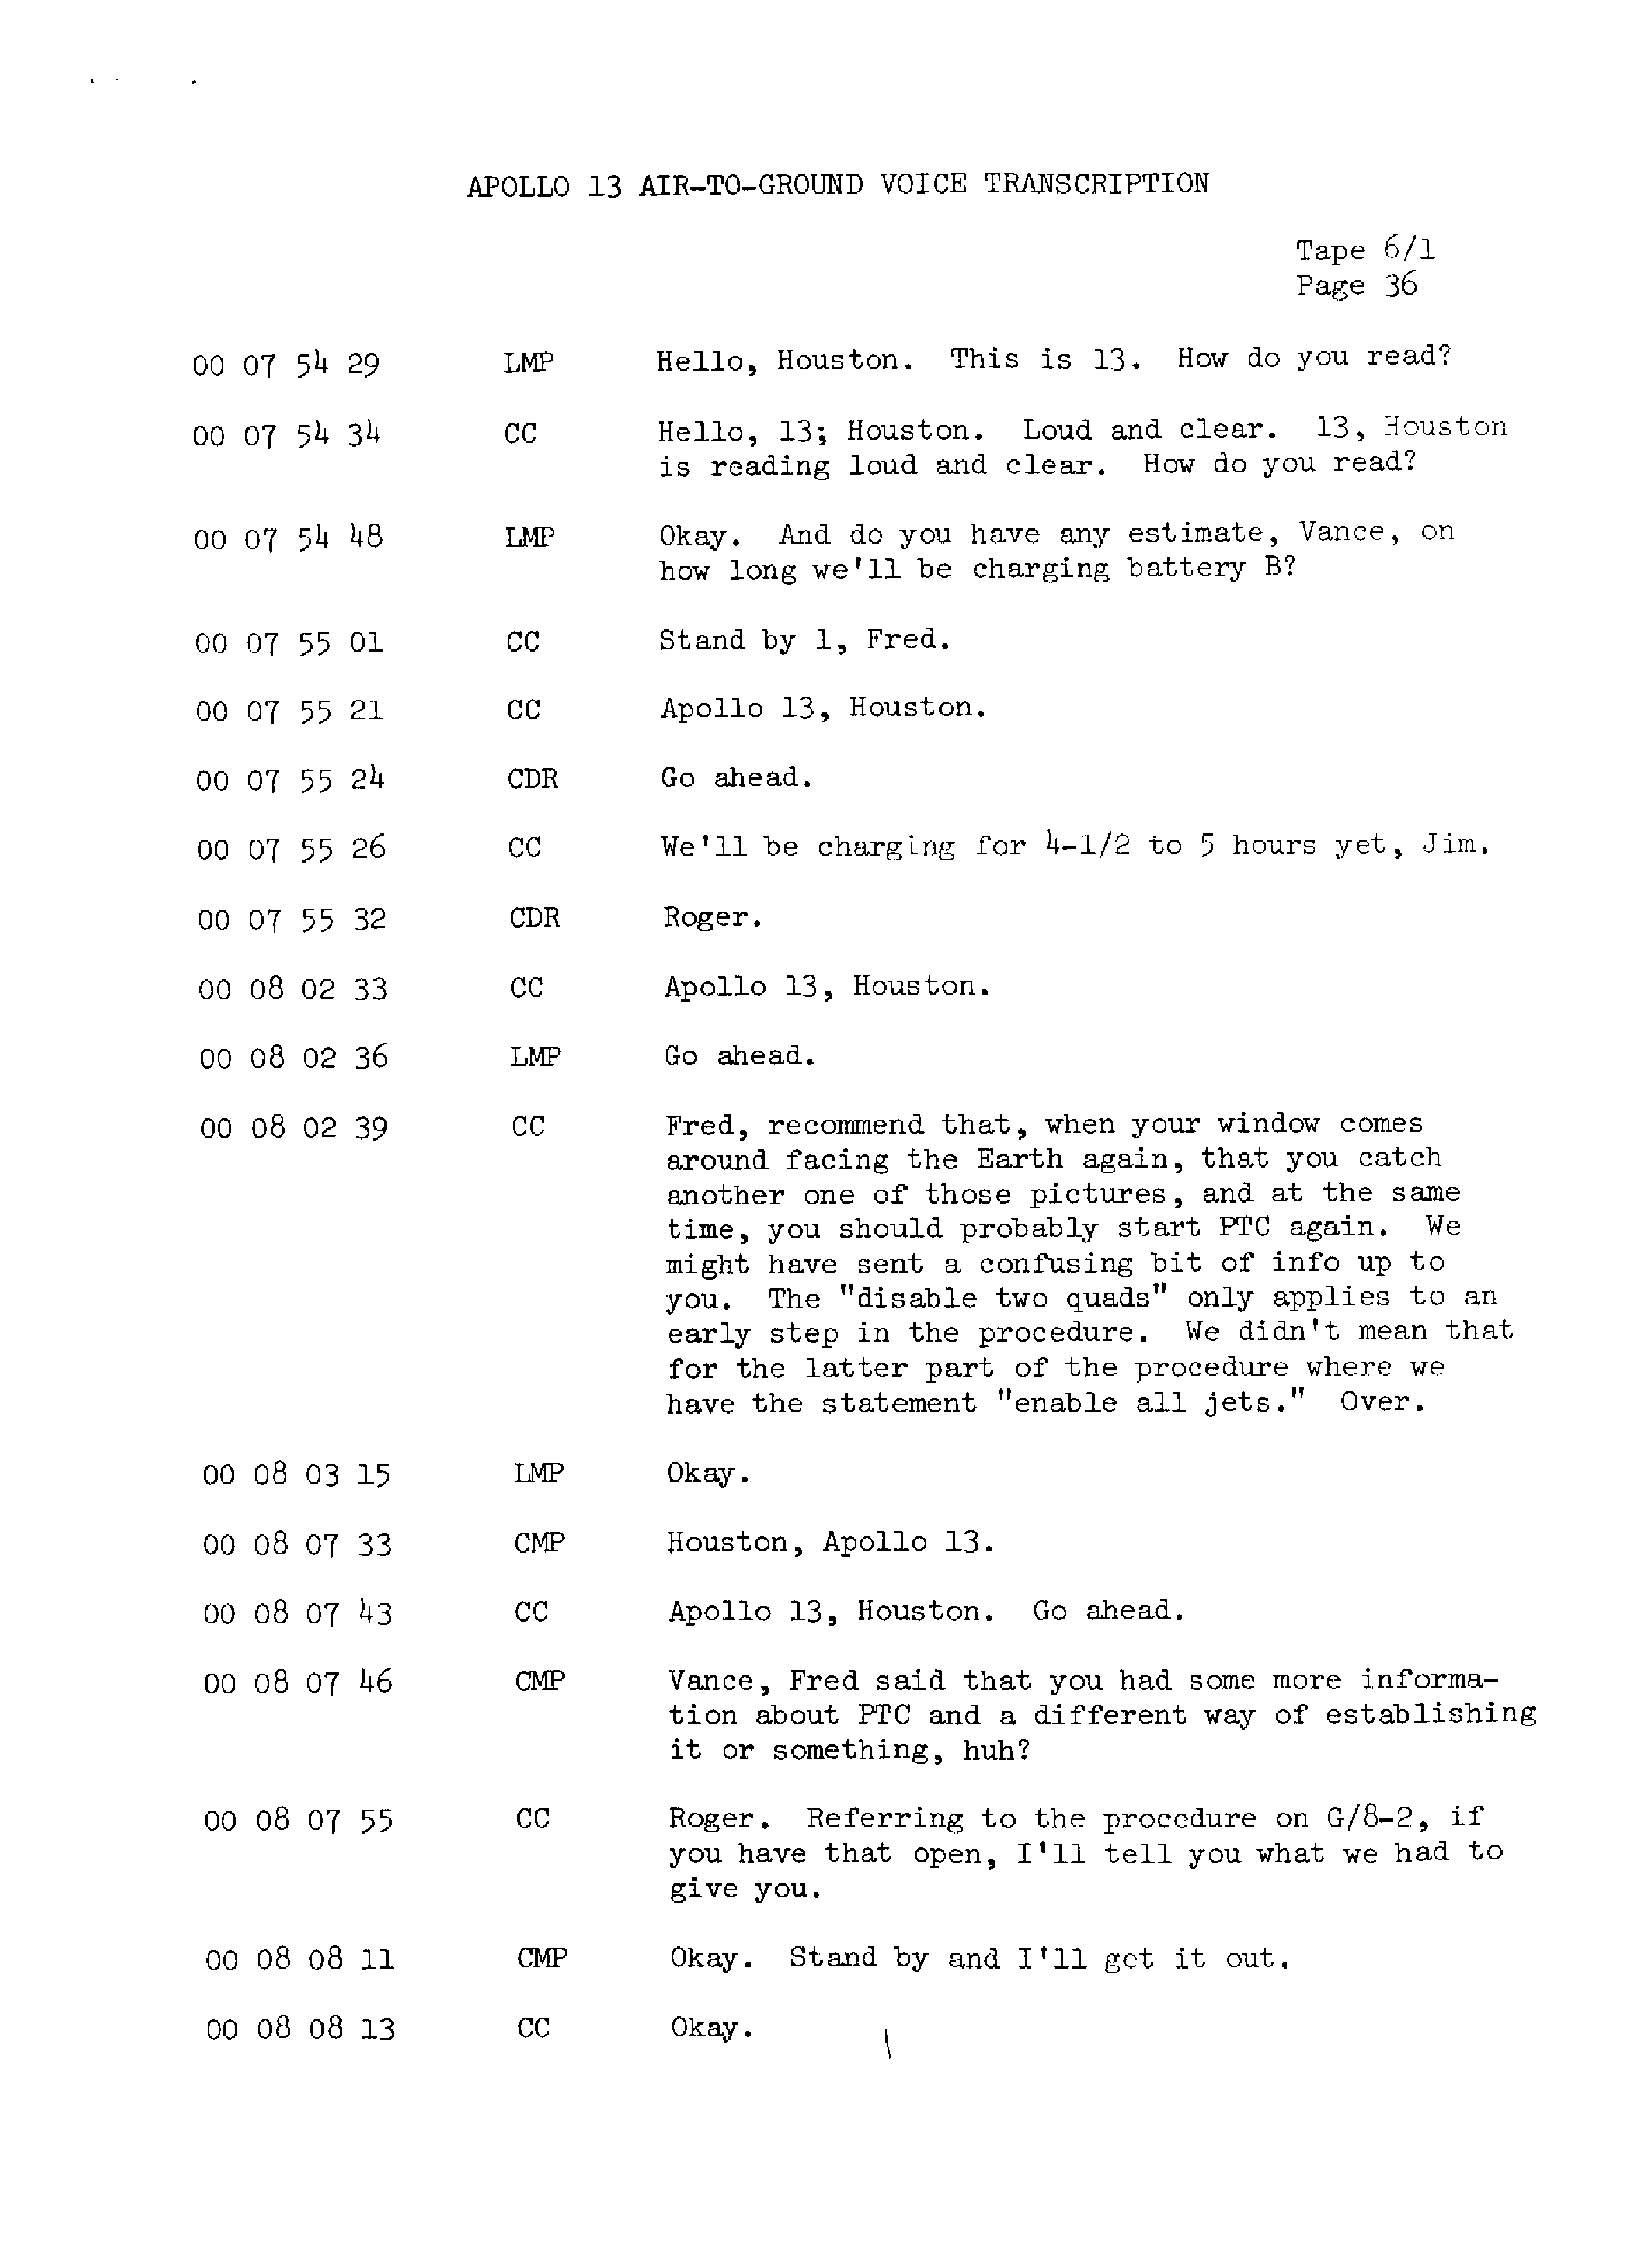 Page 43 of Apollo 13’s original transcript